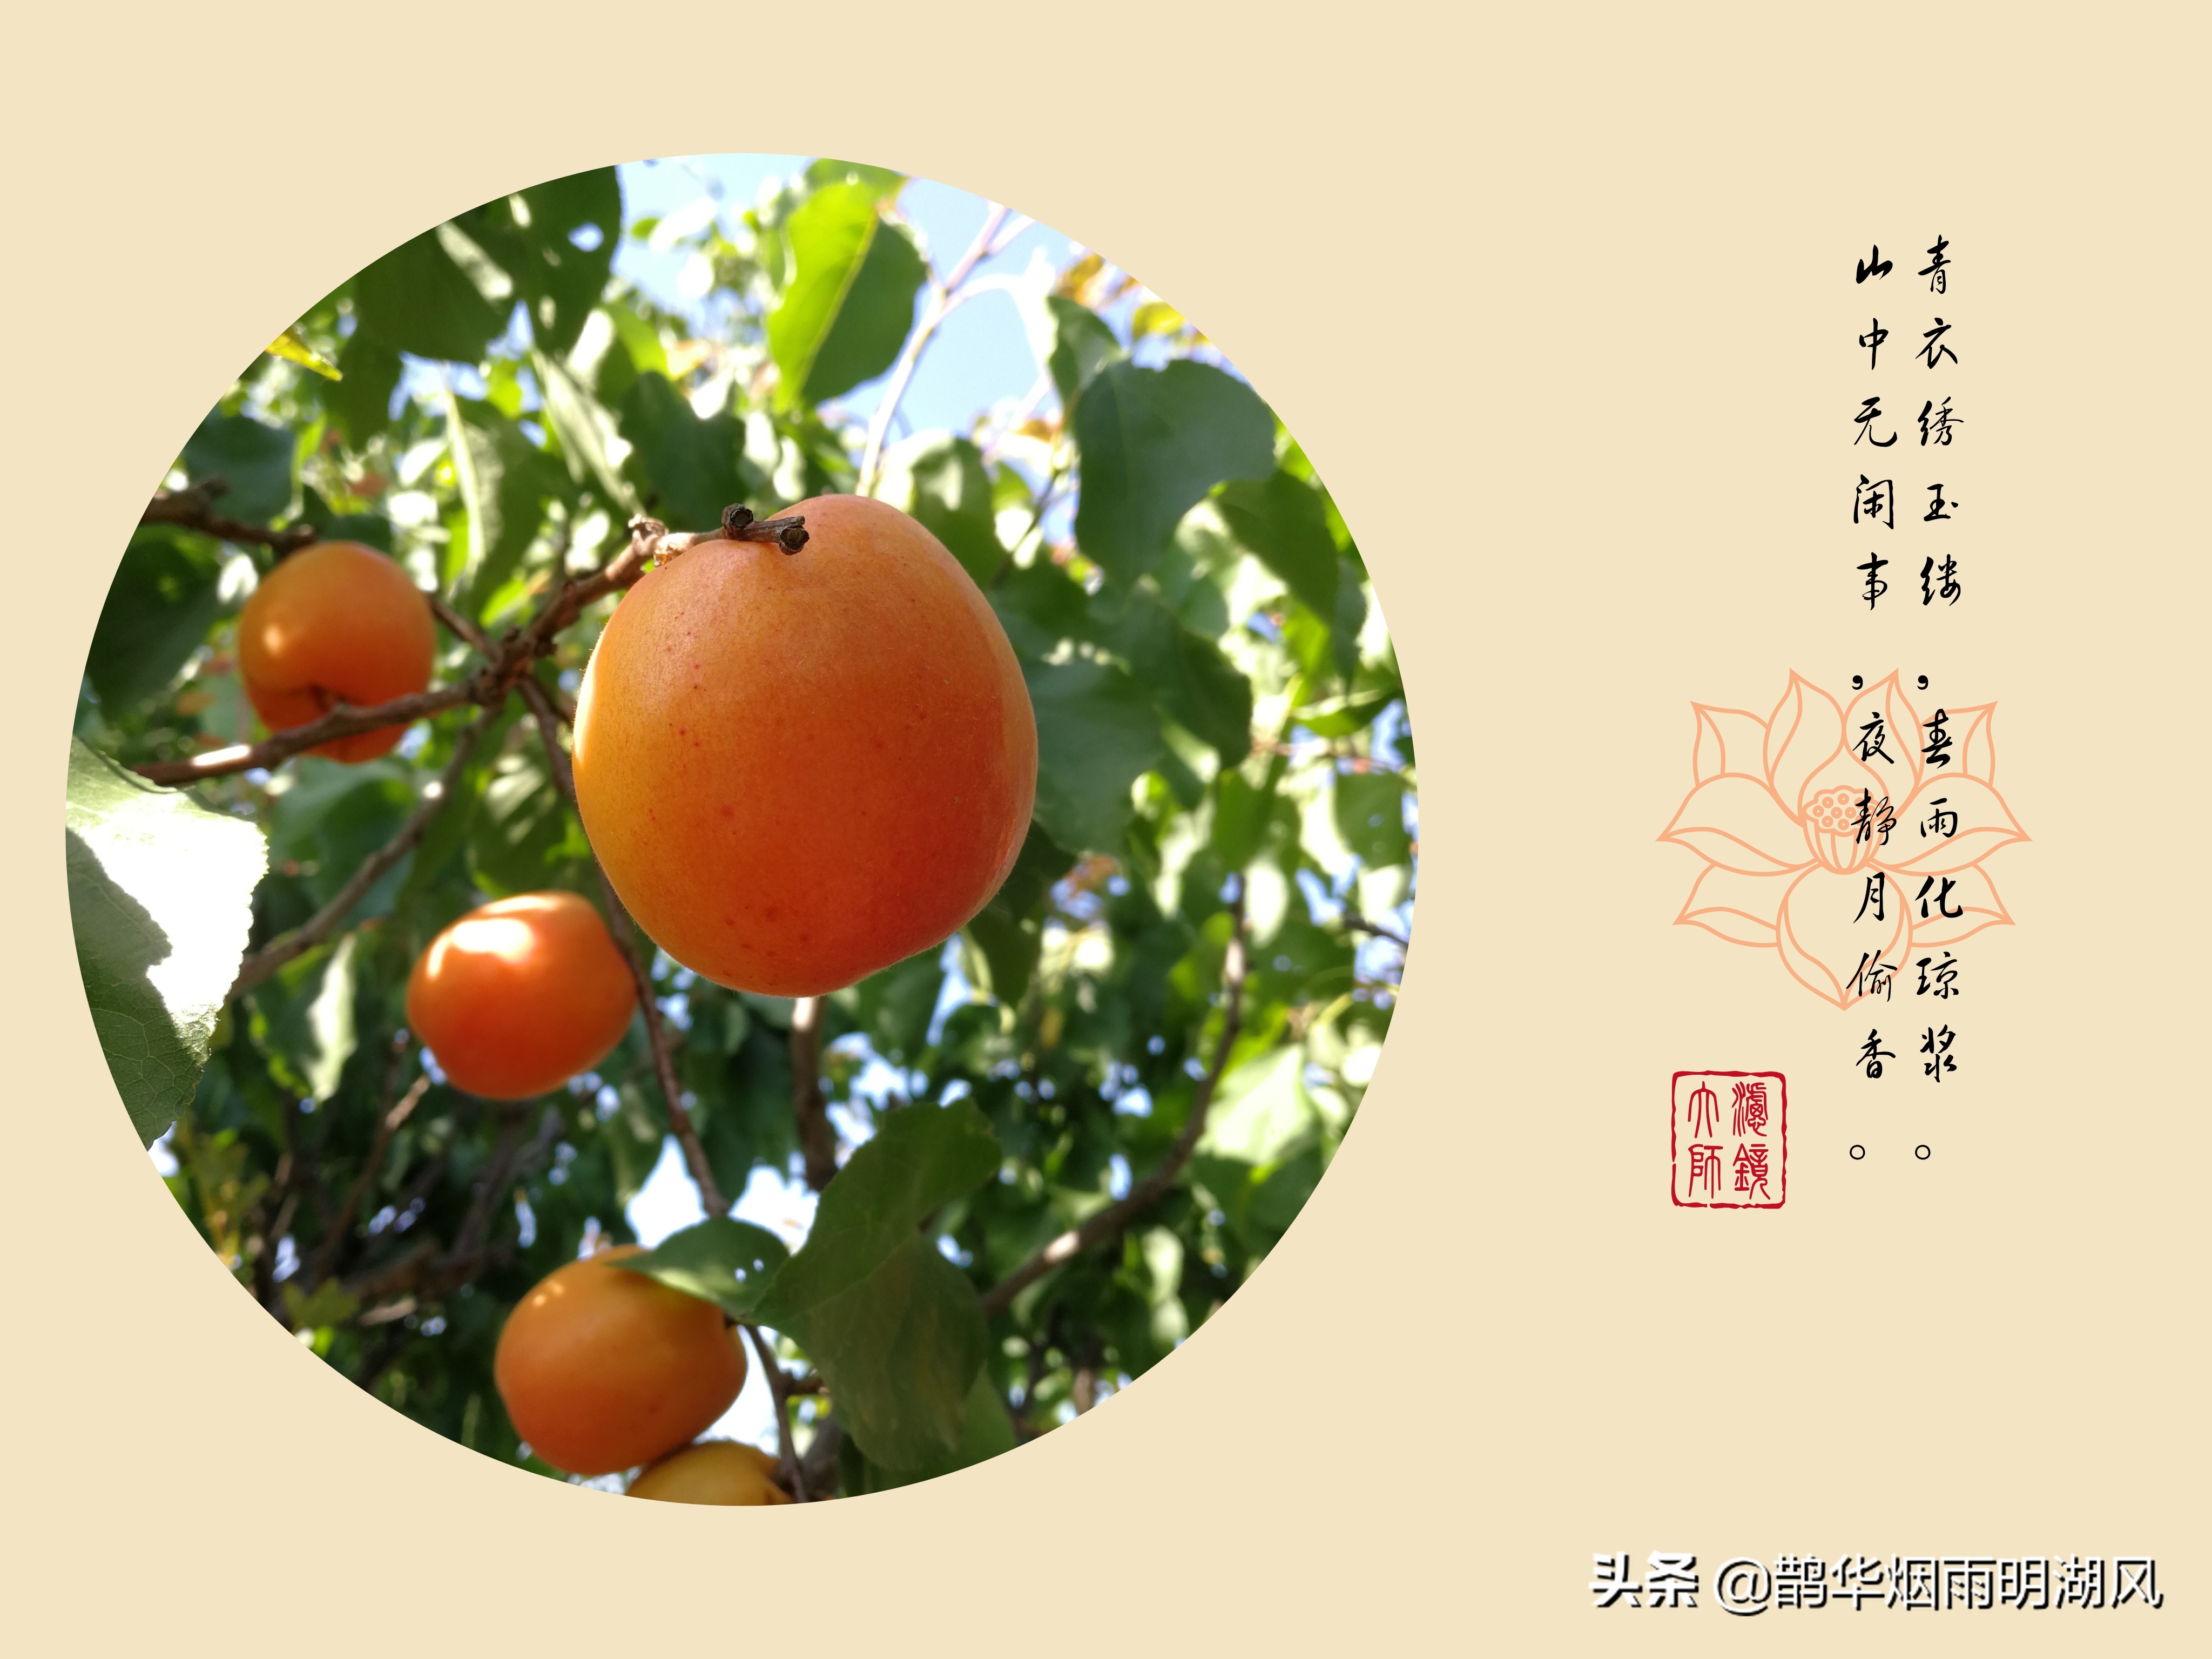 青衣绣玉缕,春雨化琼浆,聊一聊关于杏花与杏子的诗句